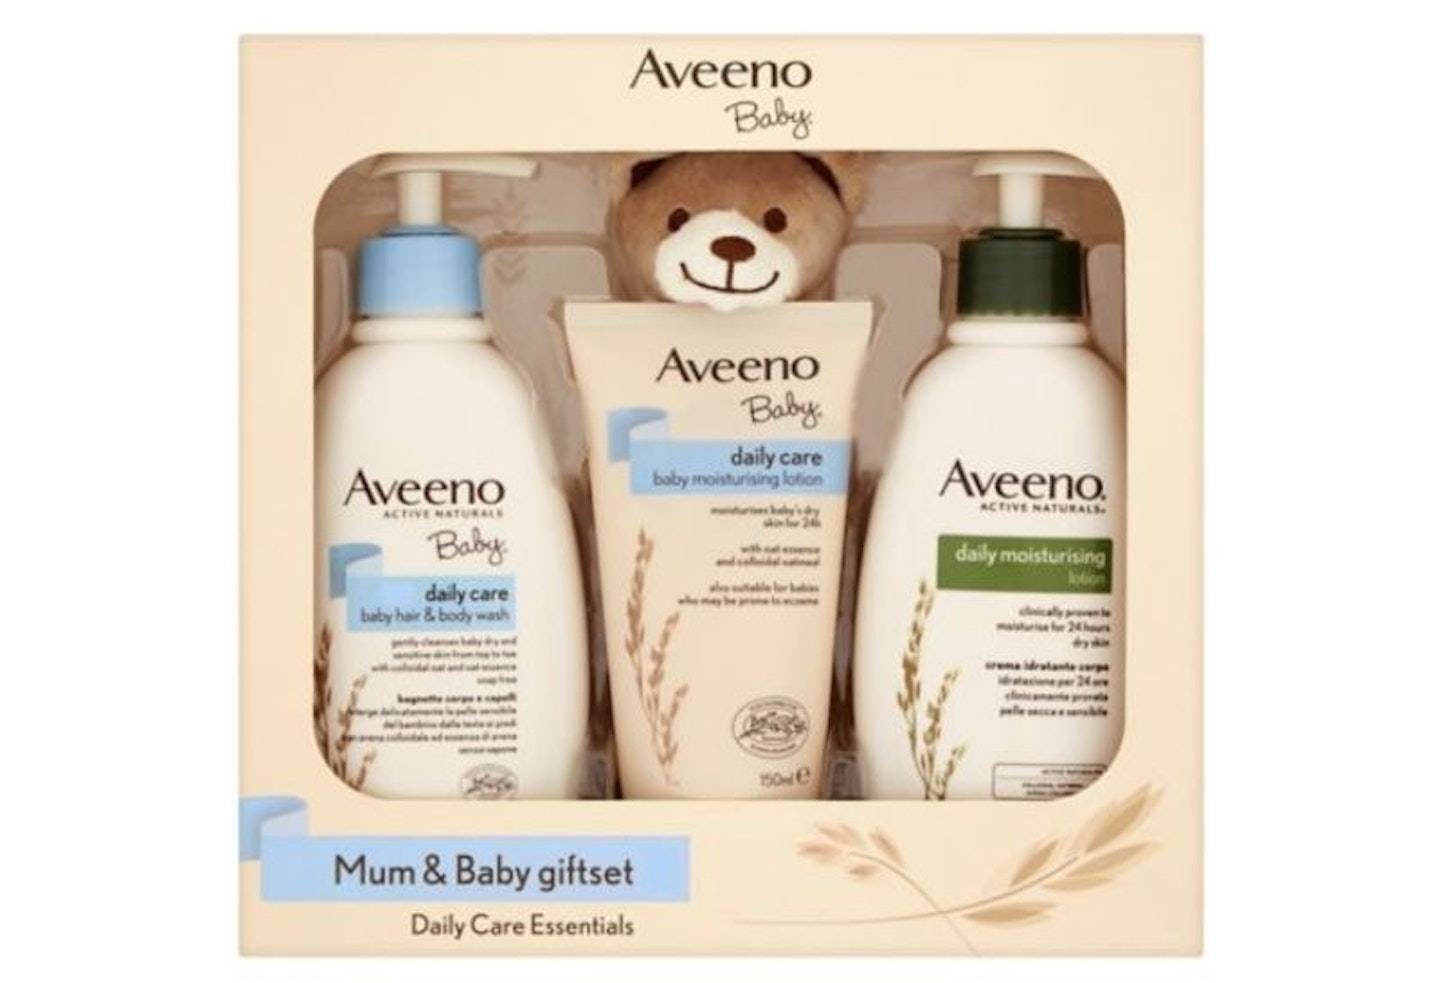 Aveeno Mum & Baby gift set